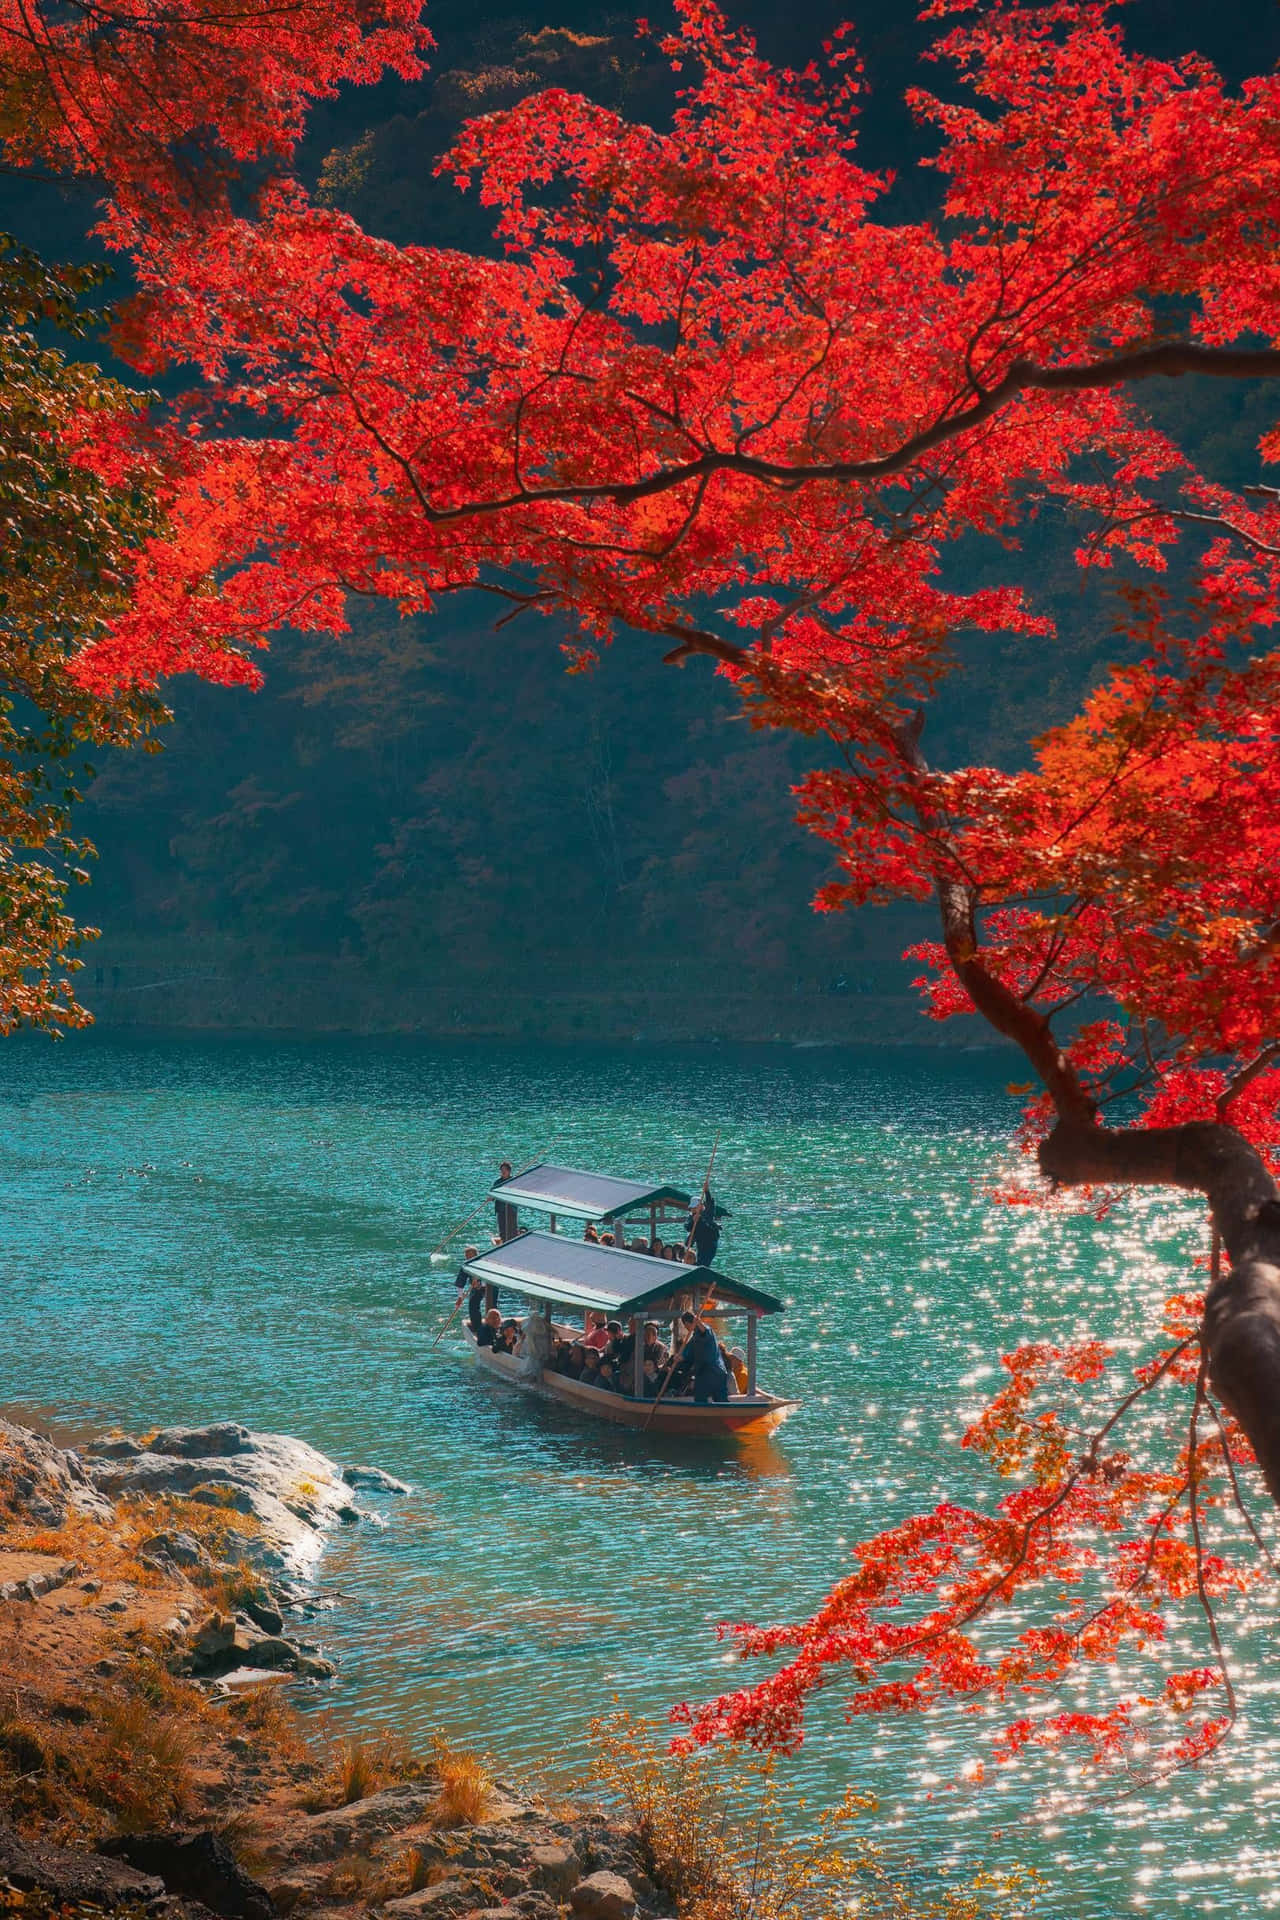 Capture the wondrous beauty of the autumn season.